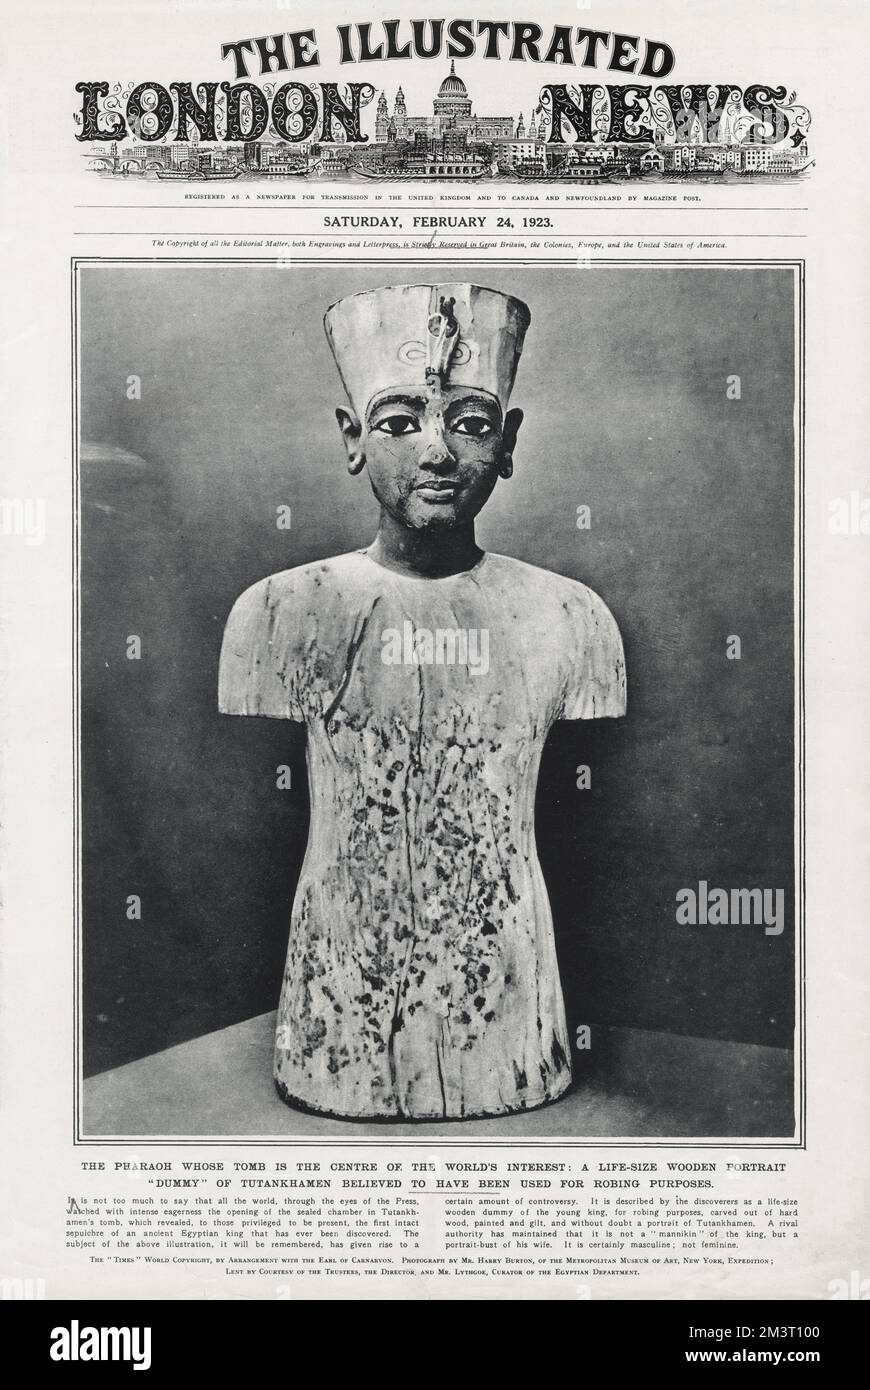 Couverture de The Illustrated London News, 24th février 1923, présentant un mannequin de portrait en bois grandeur nature de Toutankhamon qui aurait été utilisé à des fins de robing. 'Le Pharaon dont la tombe est le centre de l'intérêt du monde.' 1923 Banque D'Images